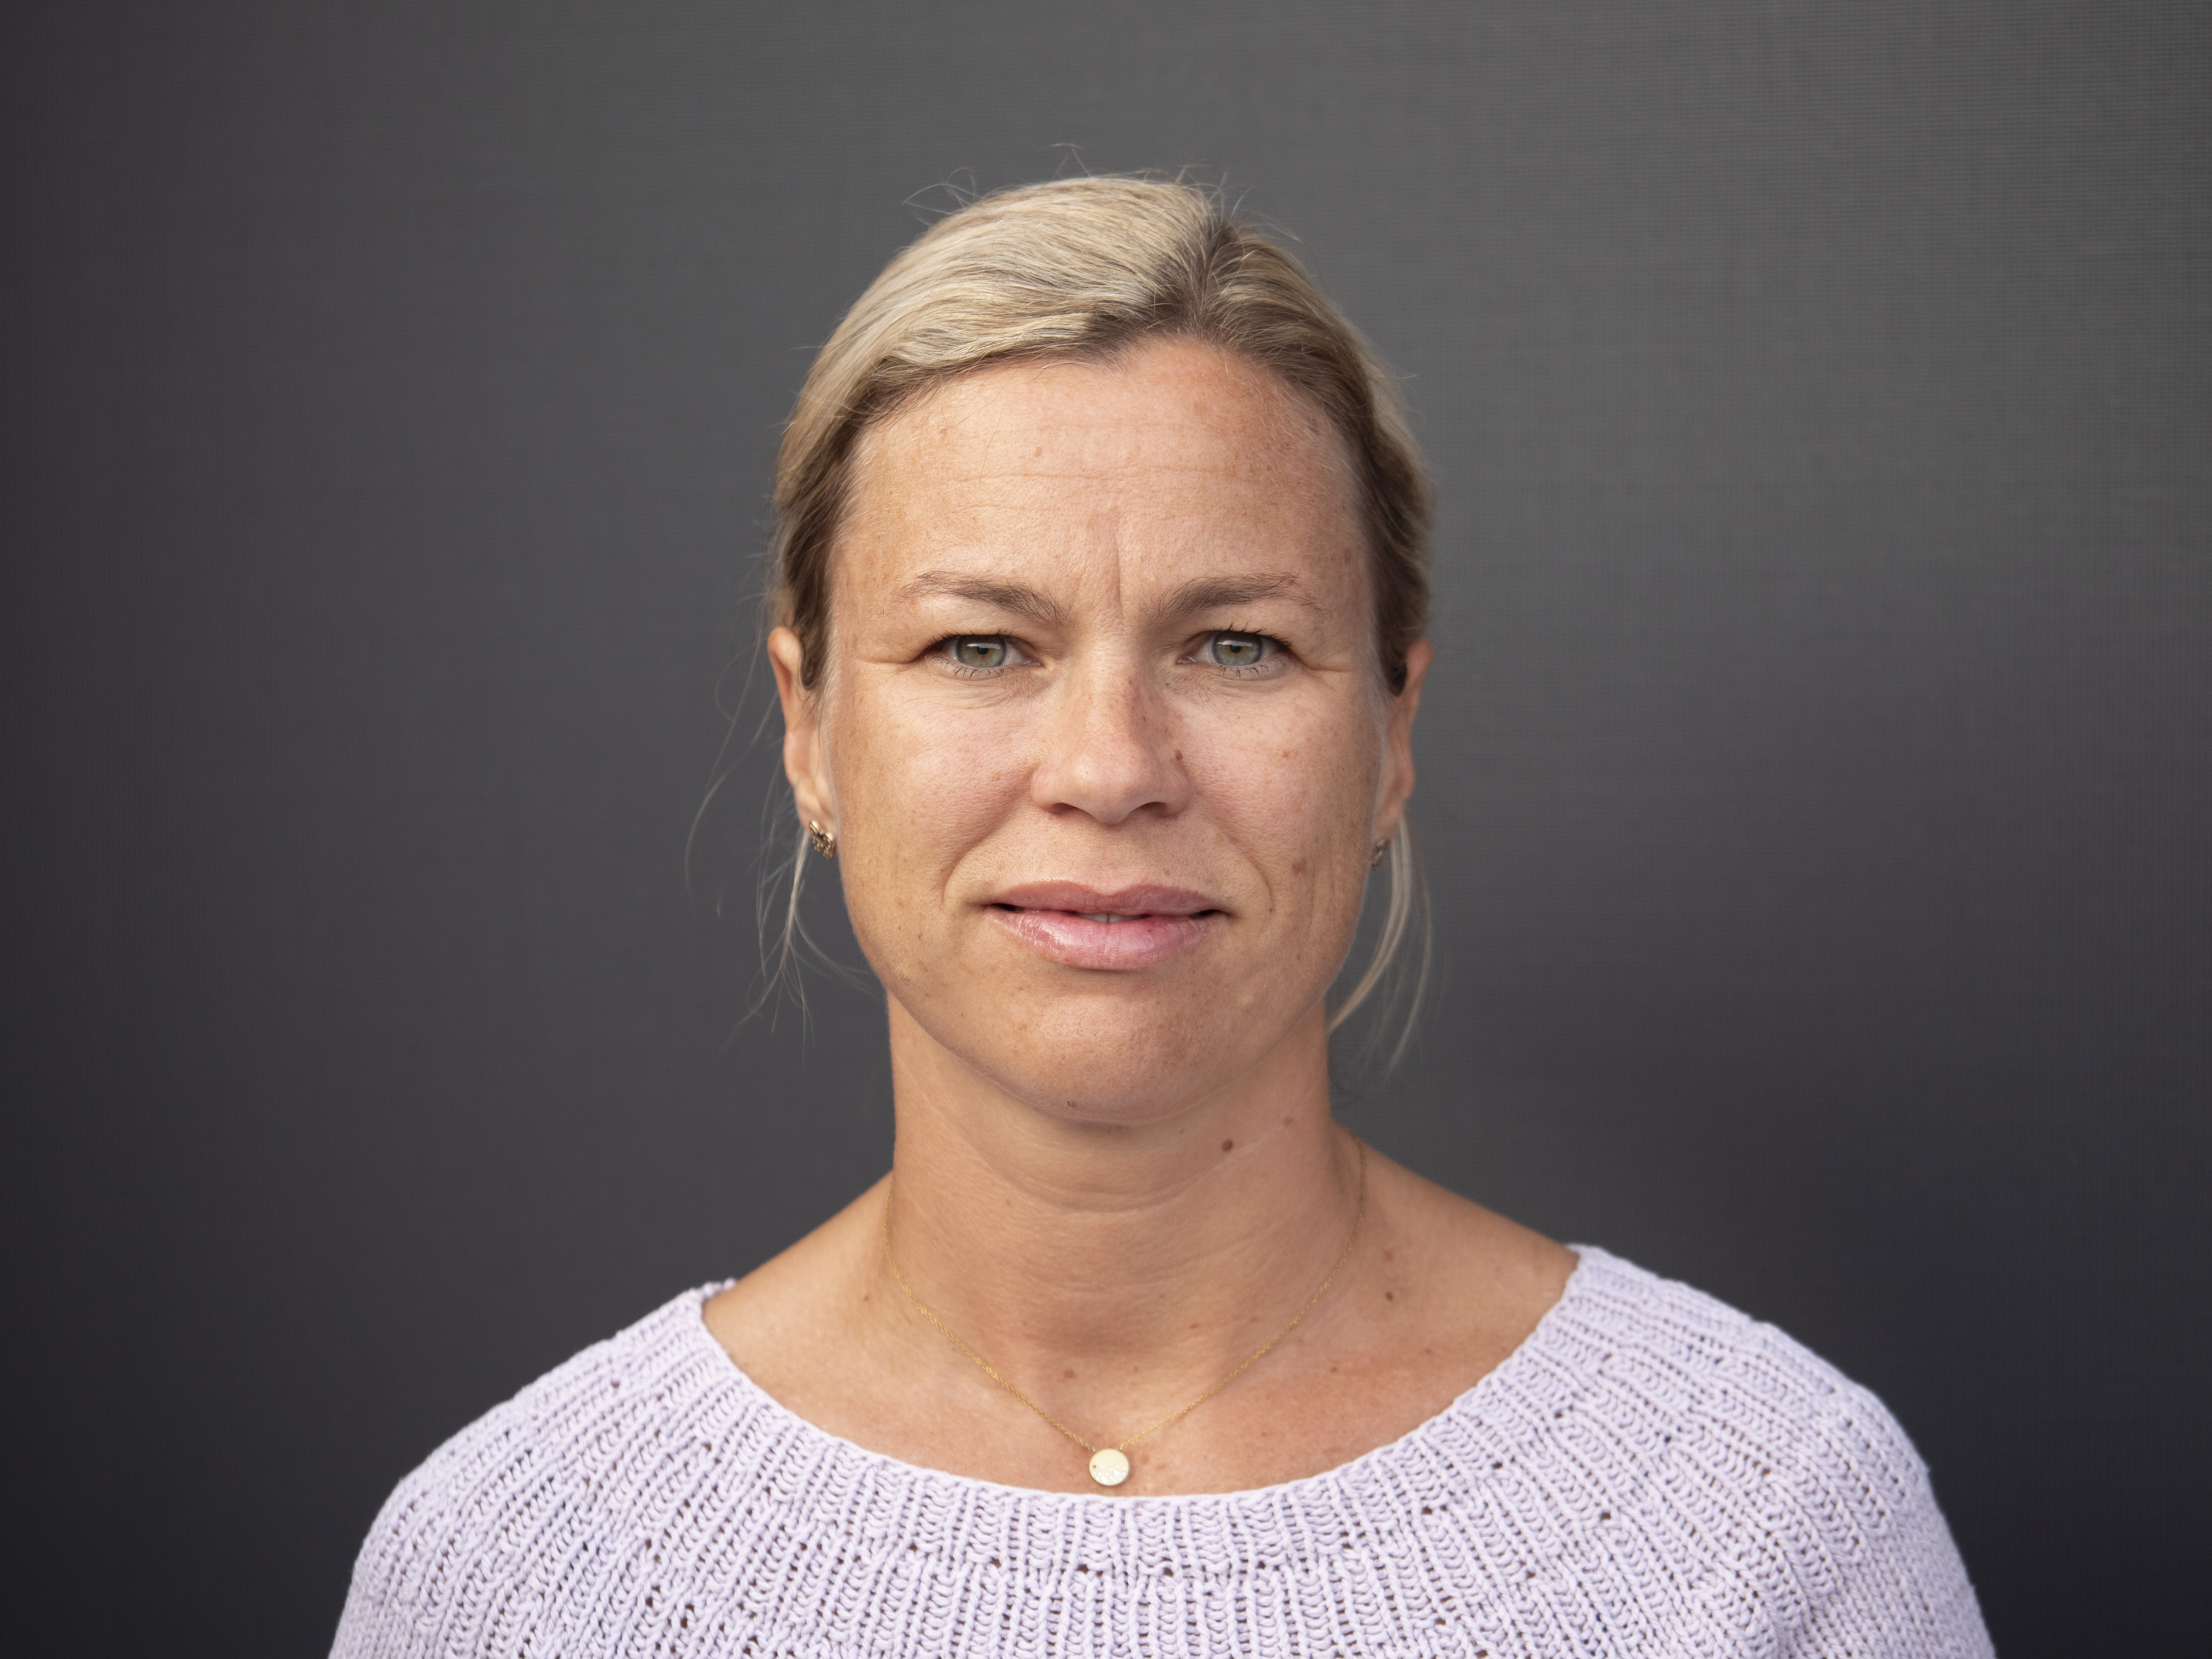 Anne-Grete Kaspersen